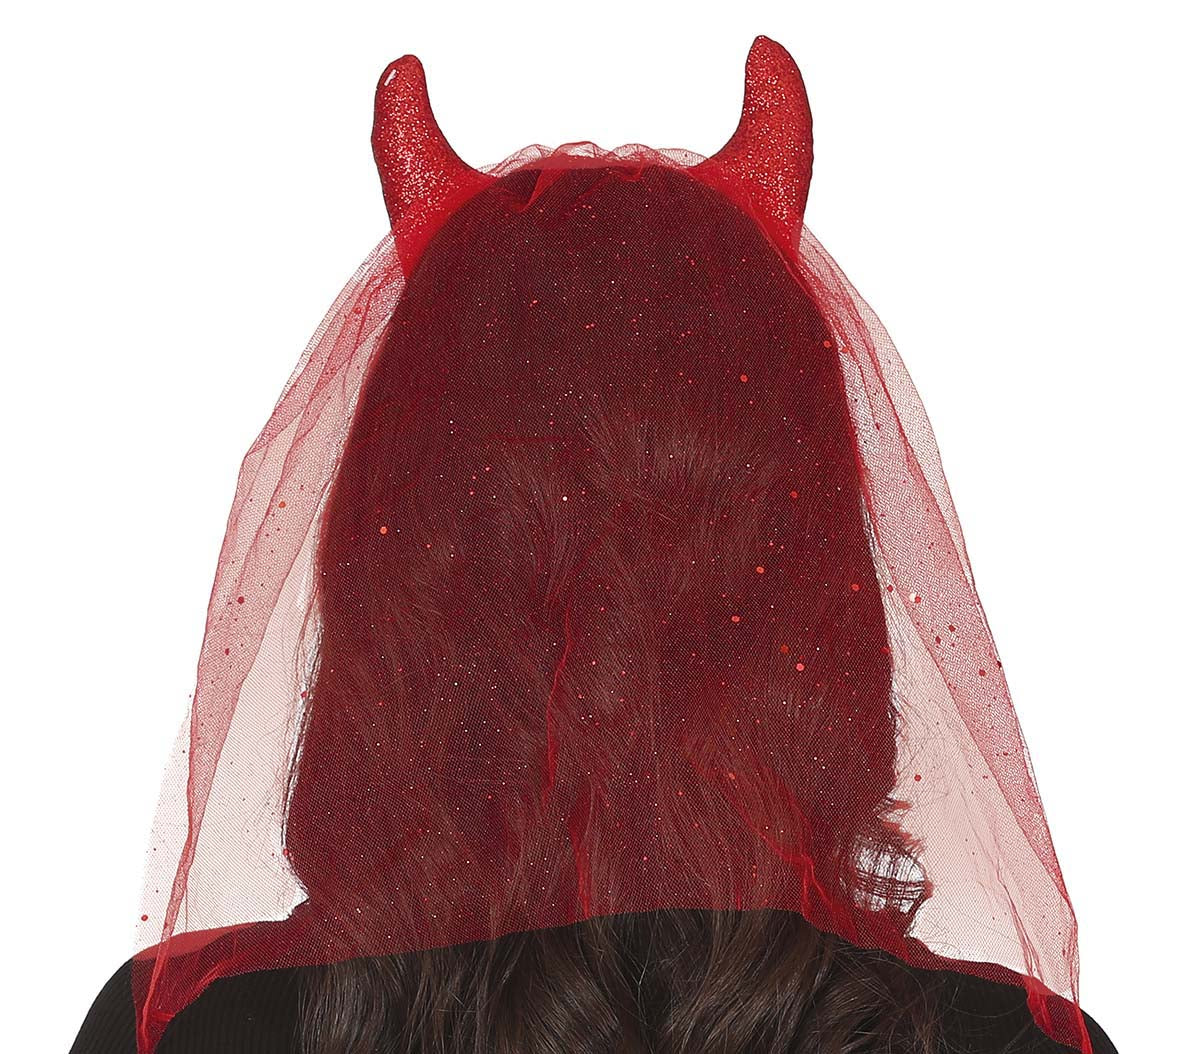 Demon Horns Headband with Veil